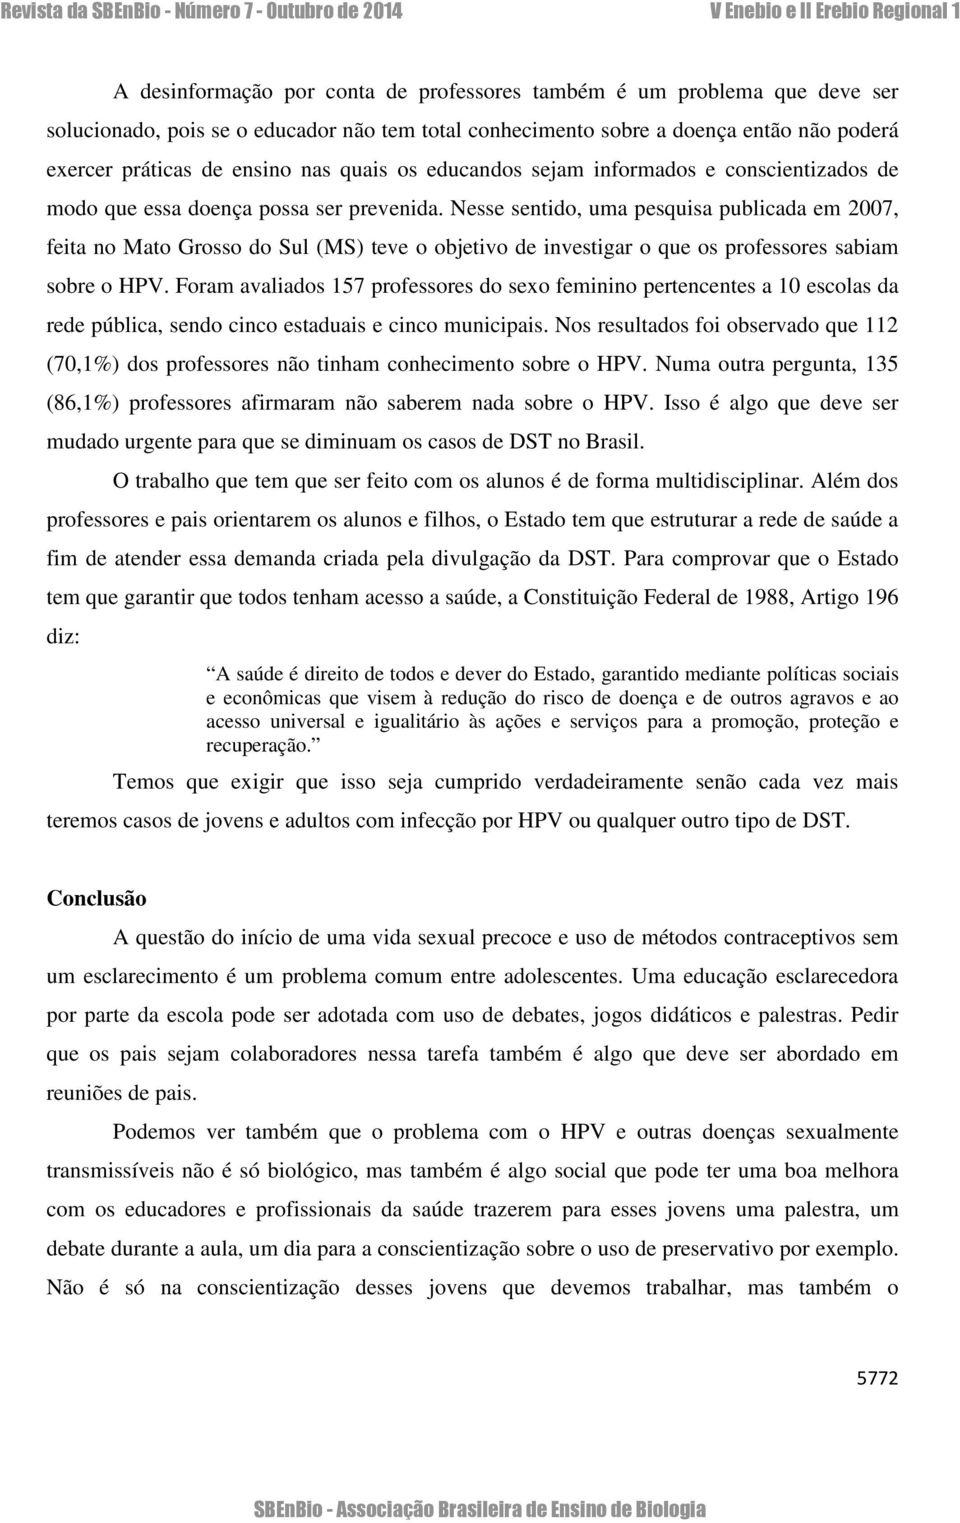 Nesse sentido, uma pesquisa publicada em 2007, feita no Mato Grosso do Sul (MS) teve o objetivo de investigar o que os professores sabiam sobre o HPV.